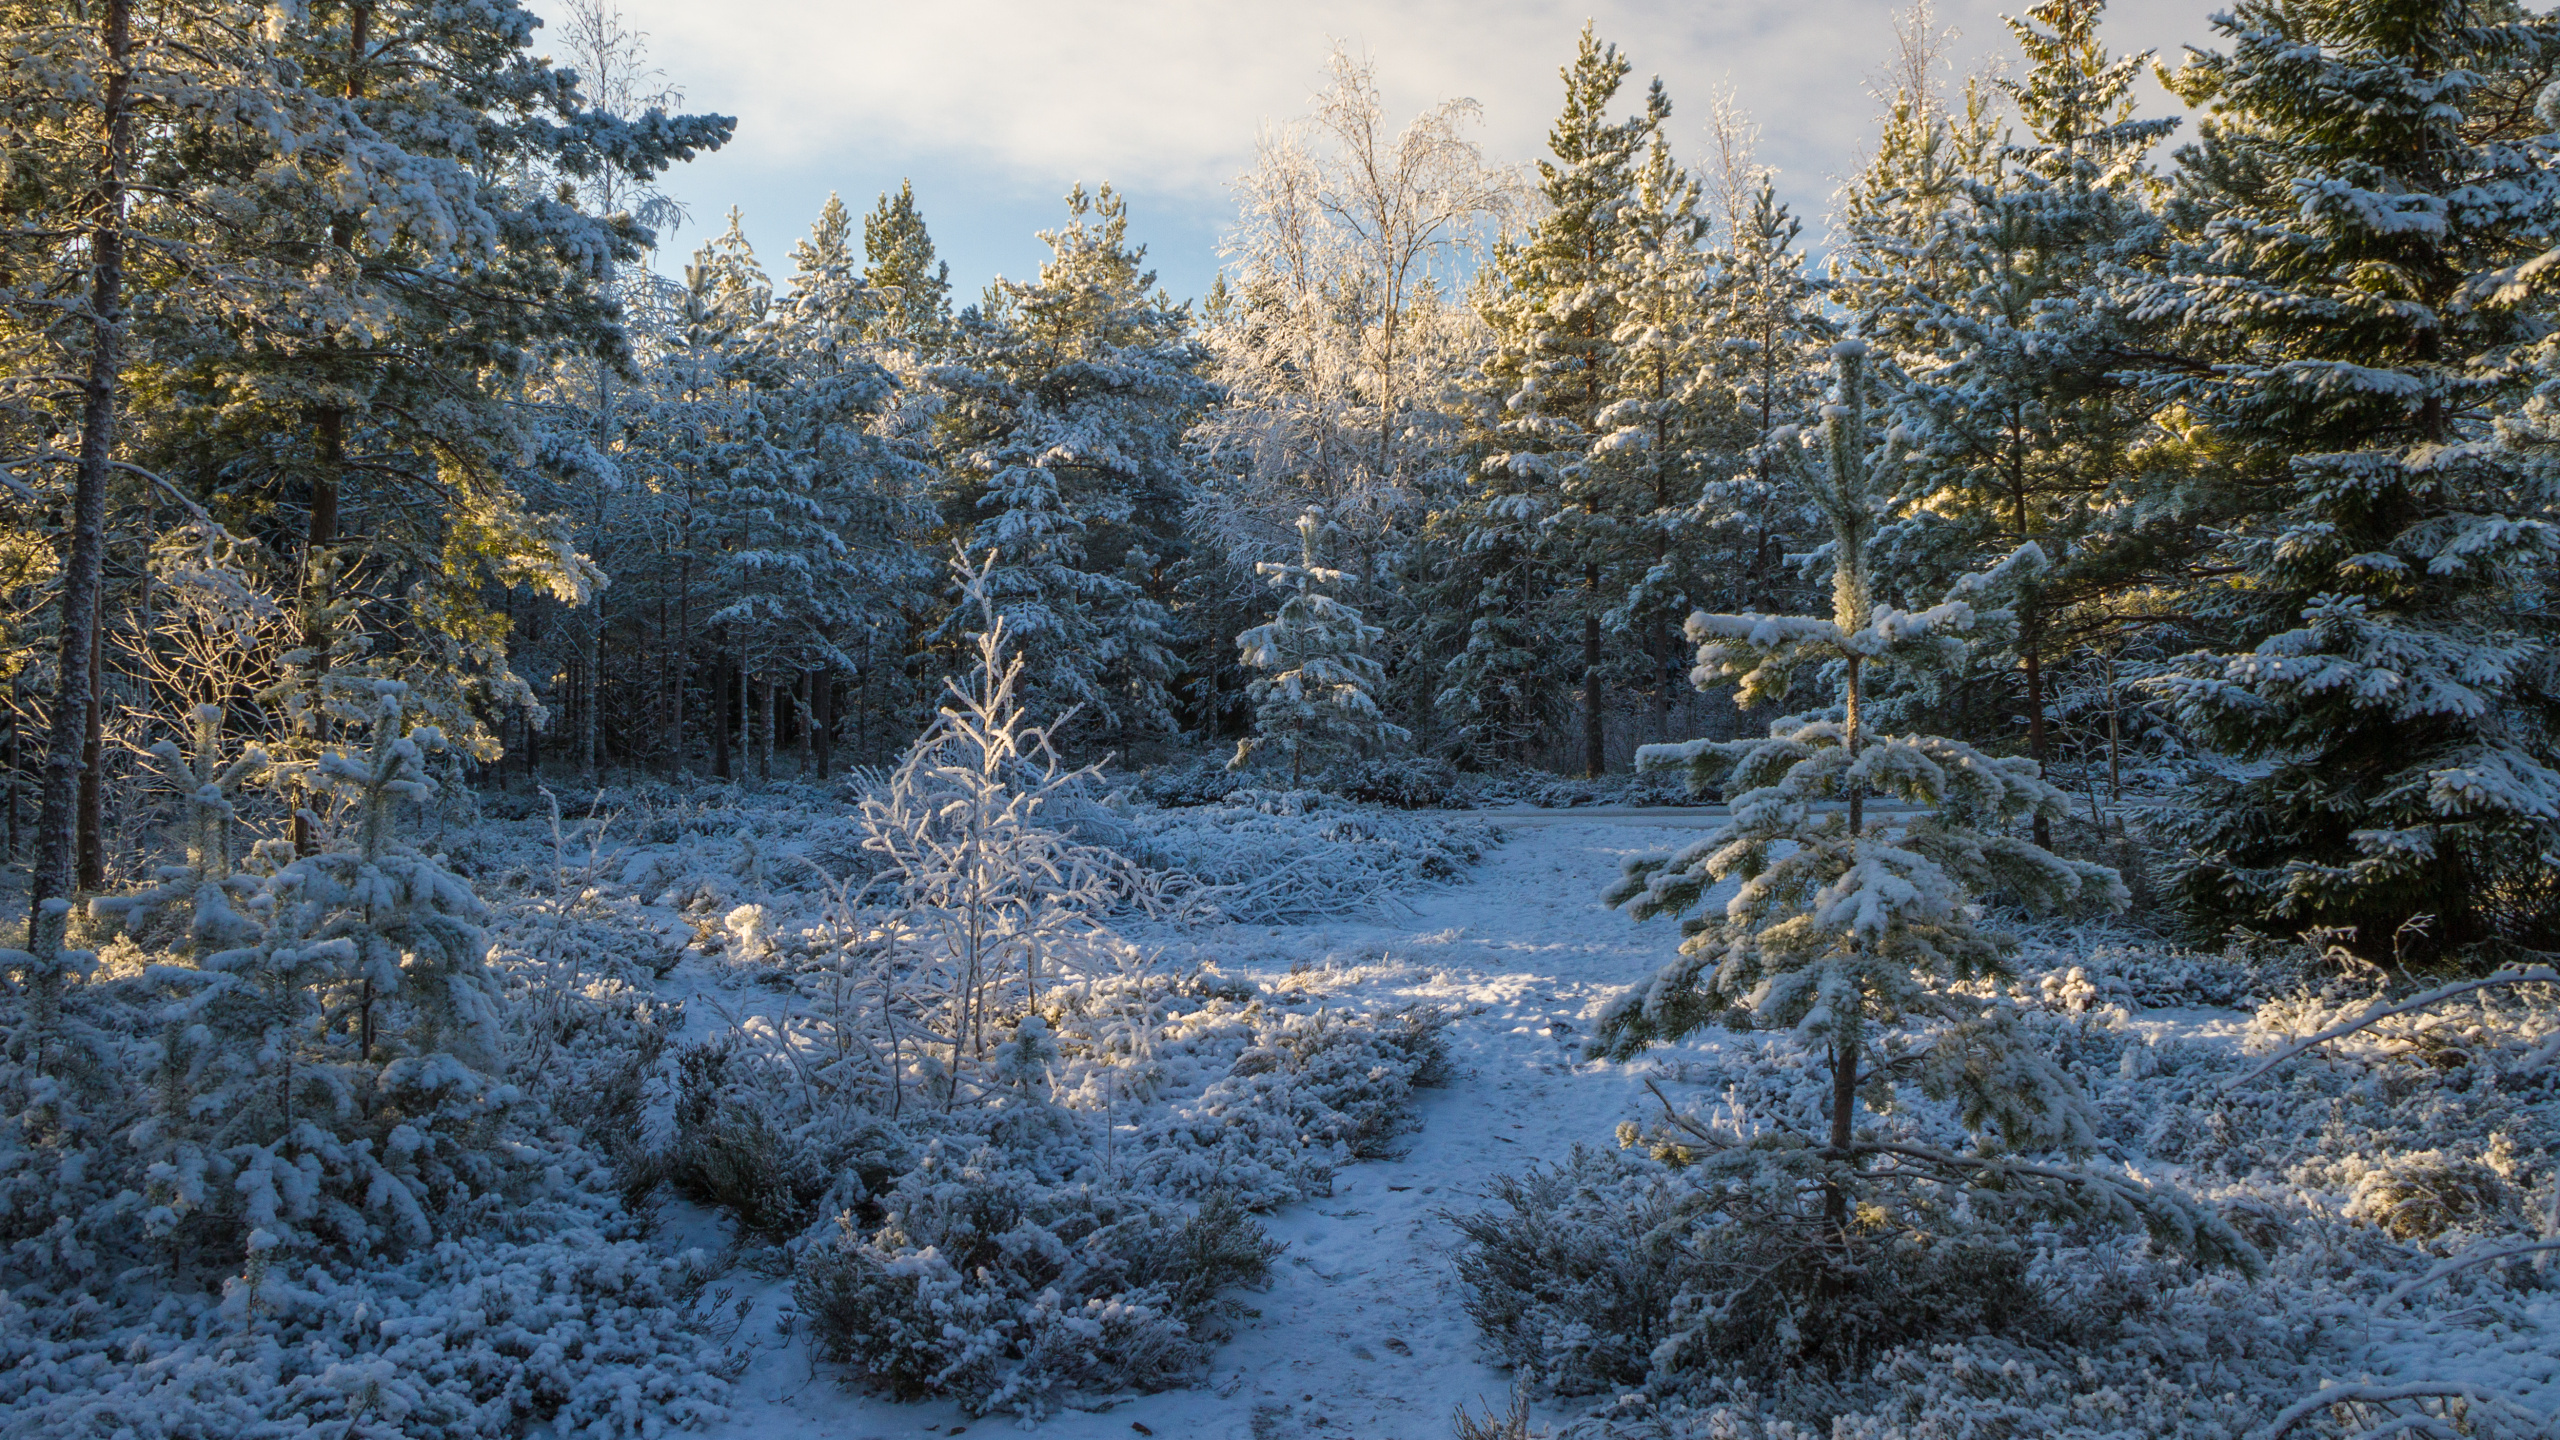 针叶树, 冬天, 森林, 冻结, 荒野 壁纸 2560x1440 允许